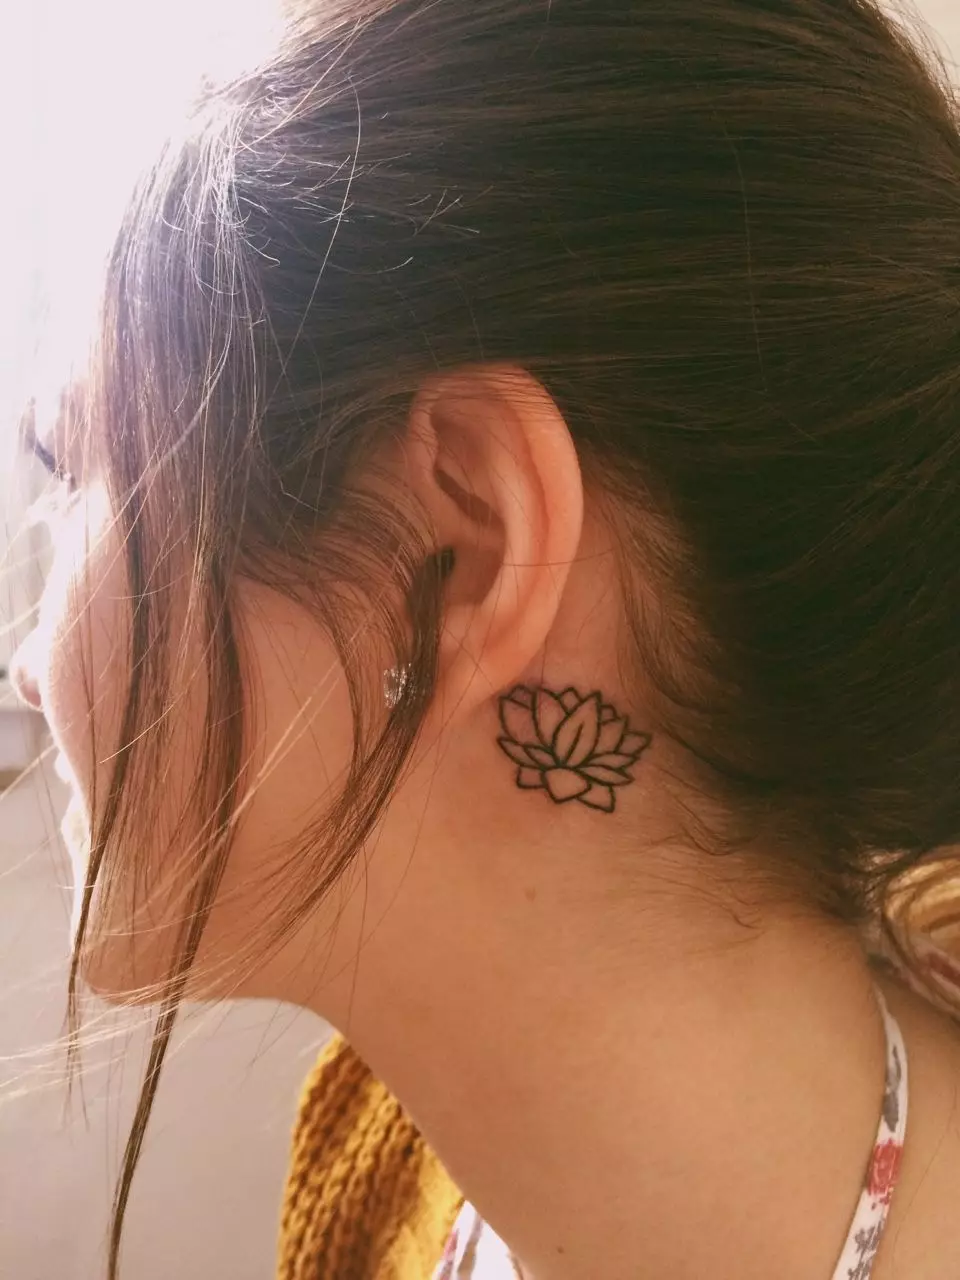 Τατουάζ πίσω από το αυτί για τα κορίτσια (39 φωτογραφίες): Σκίτσα μικρών τατουάζ, η αξία των γυναικείων μίνι-τατουάζ, τατουάζ με αστέρια και επιγραφές, φίδια και φτερά, άλλες επιλογές 14190_28